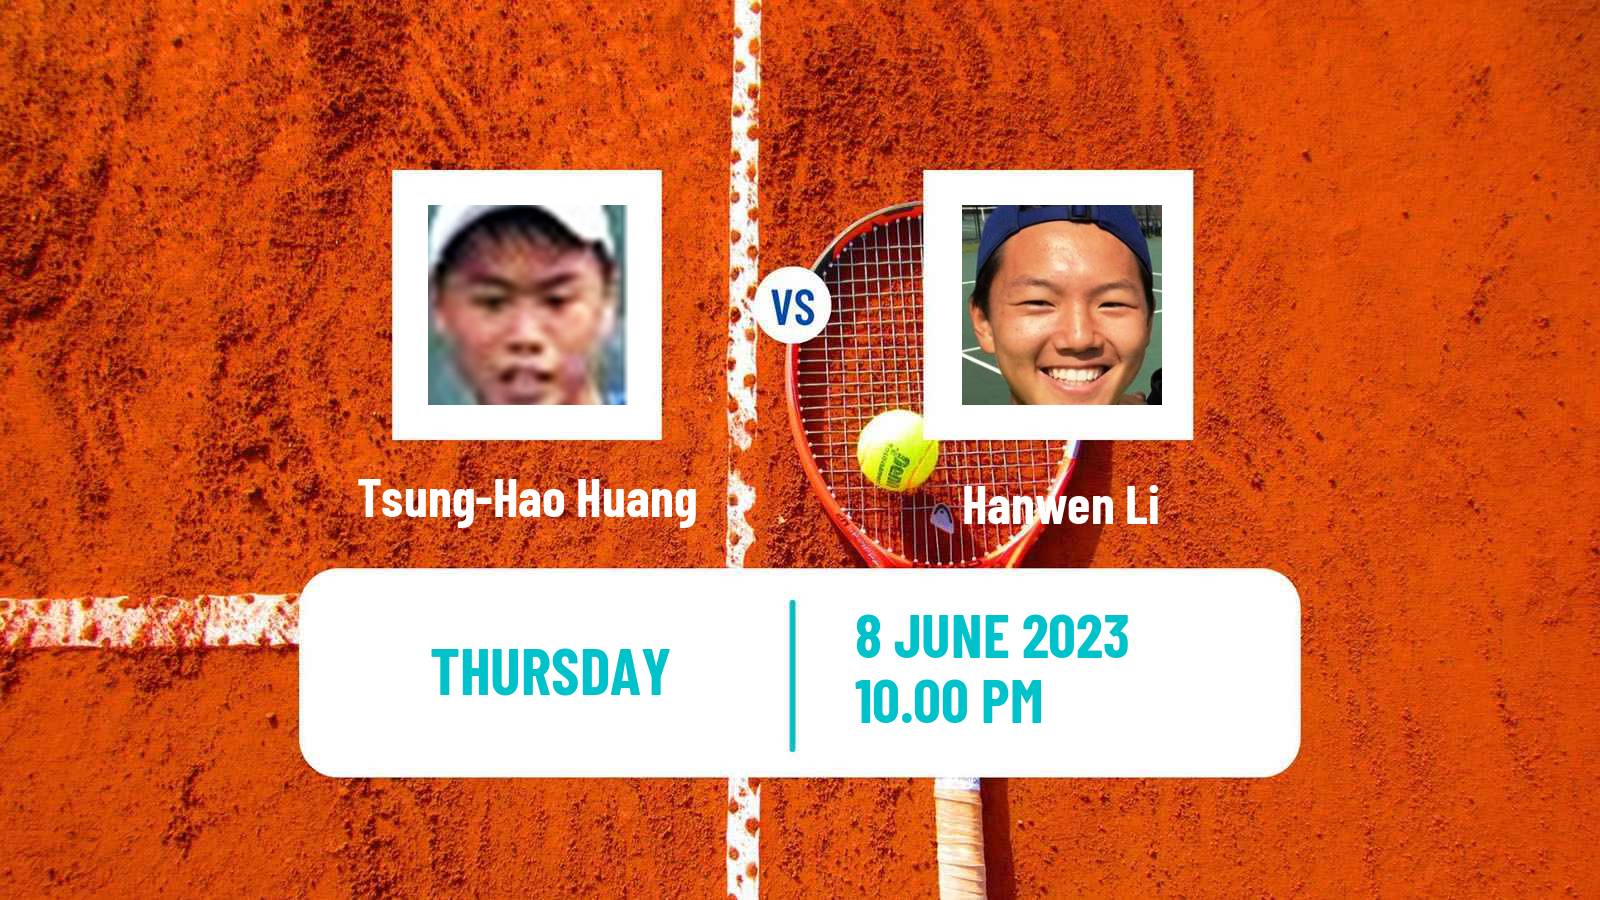 Tennis ITF M25 Luzhou Men Tsung-Hao Huang - Hanwen Li